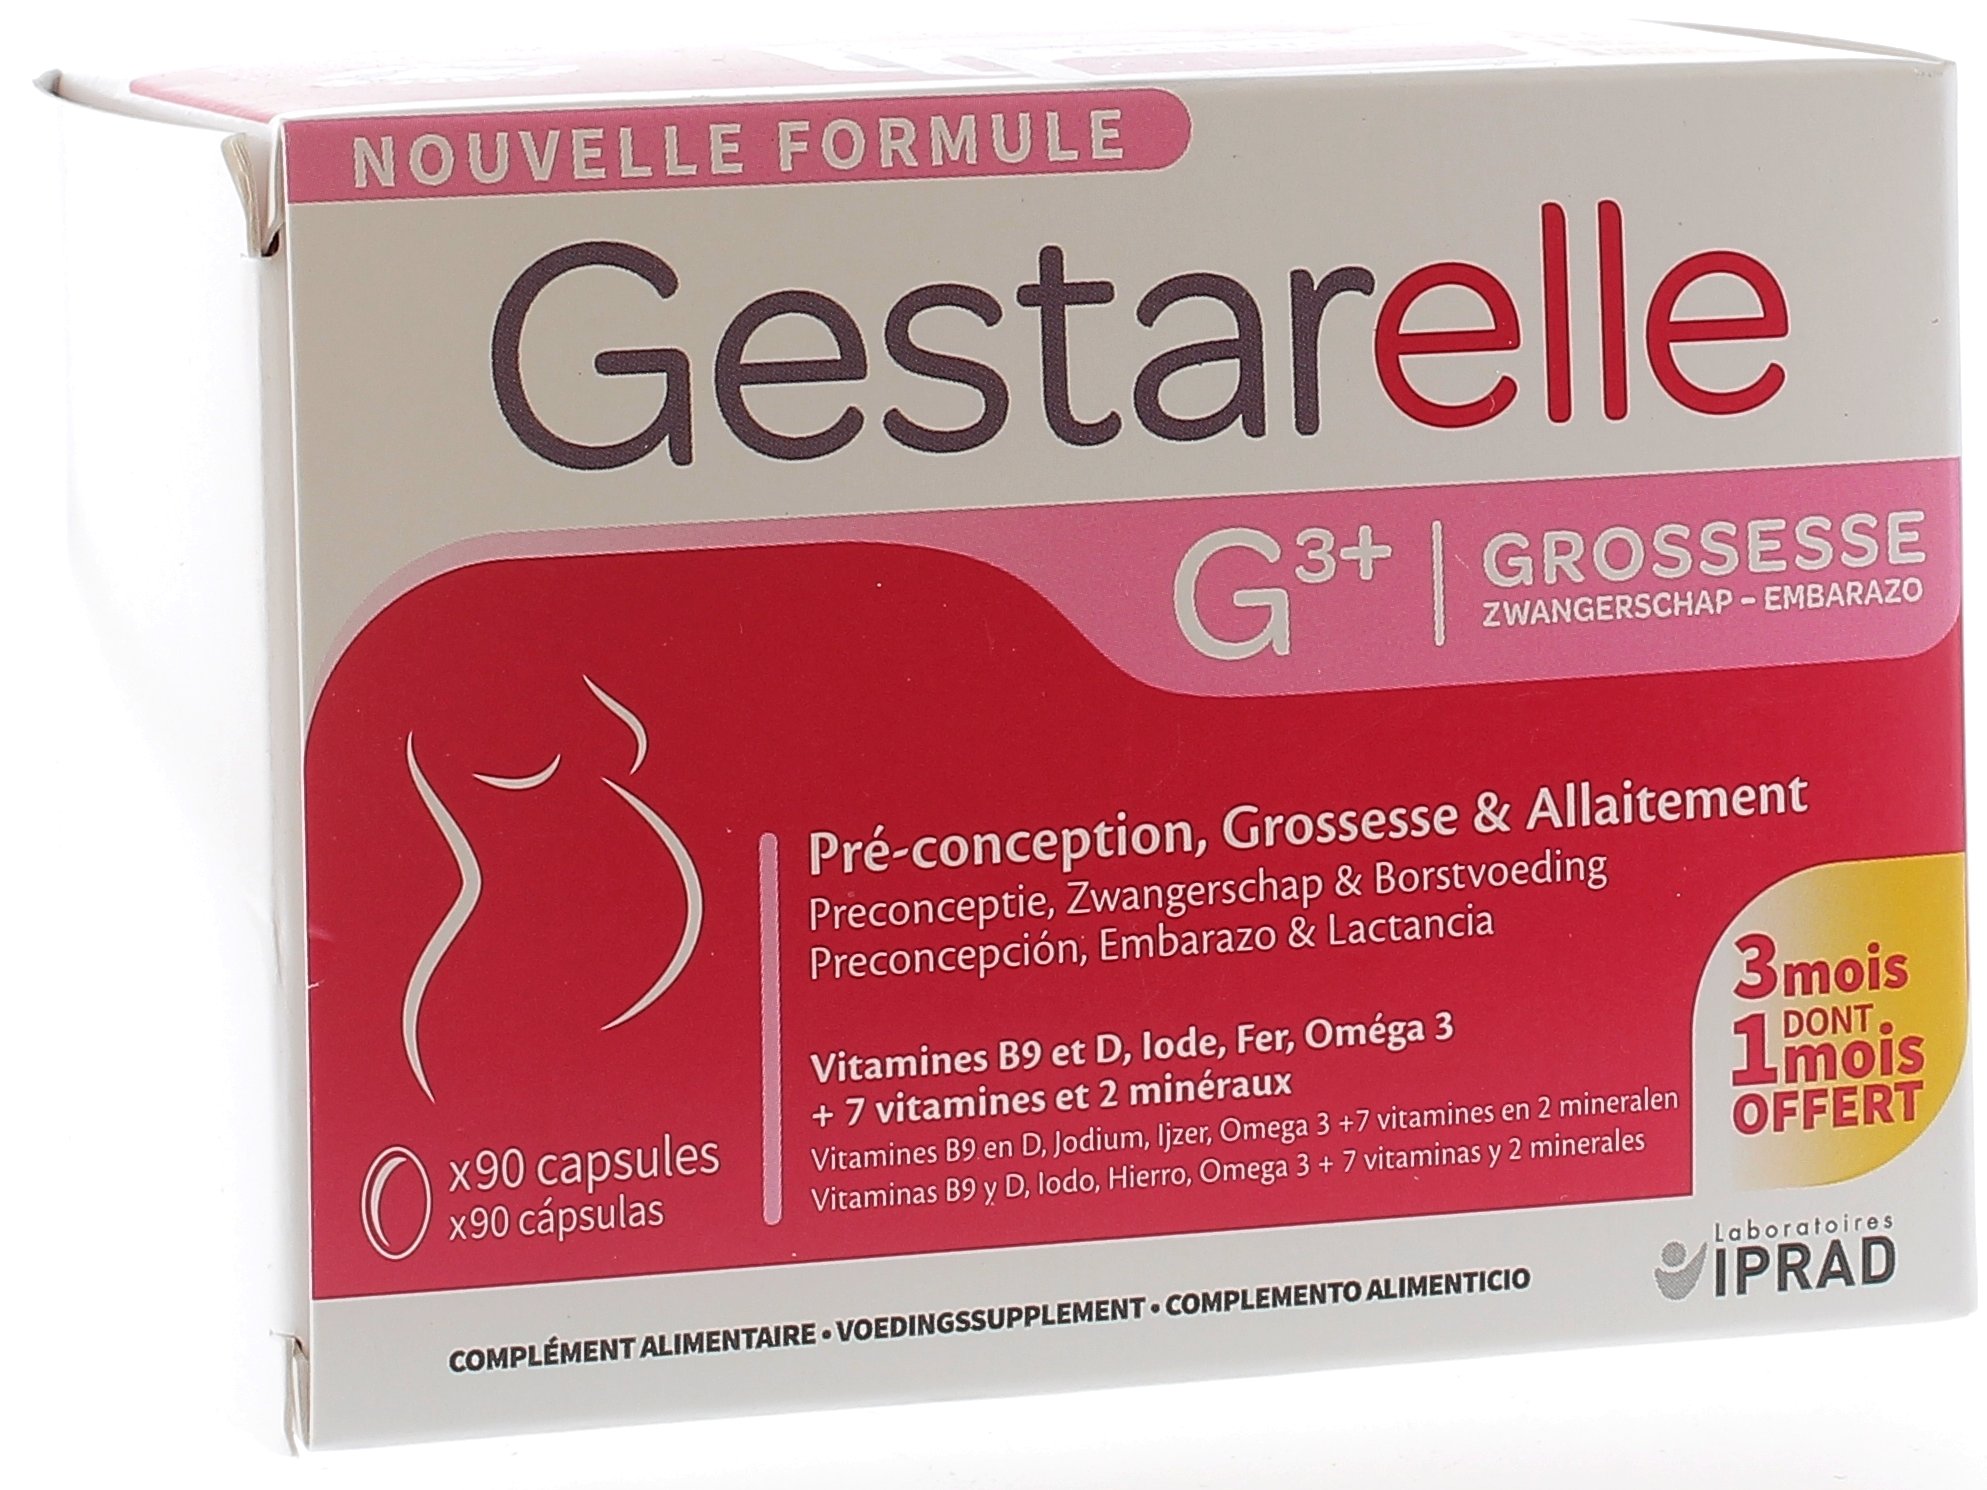 Gestarelle G3+ grossesse pré-conception, grossesse & allaitement